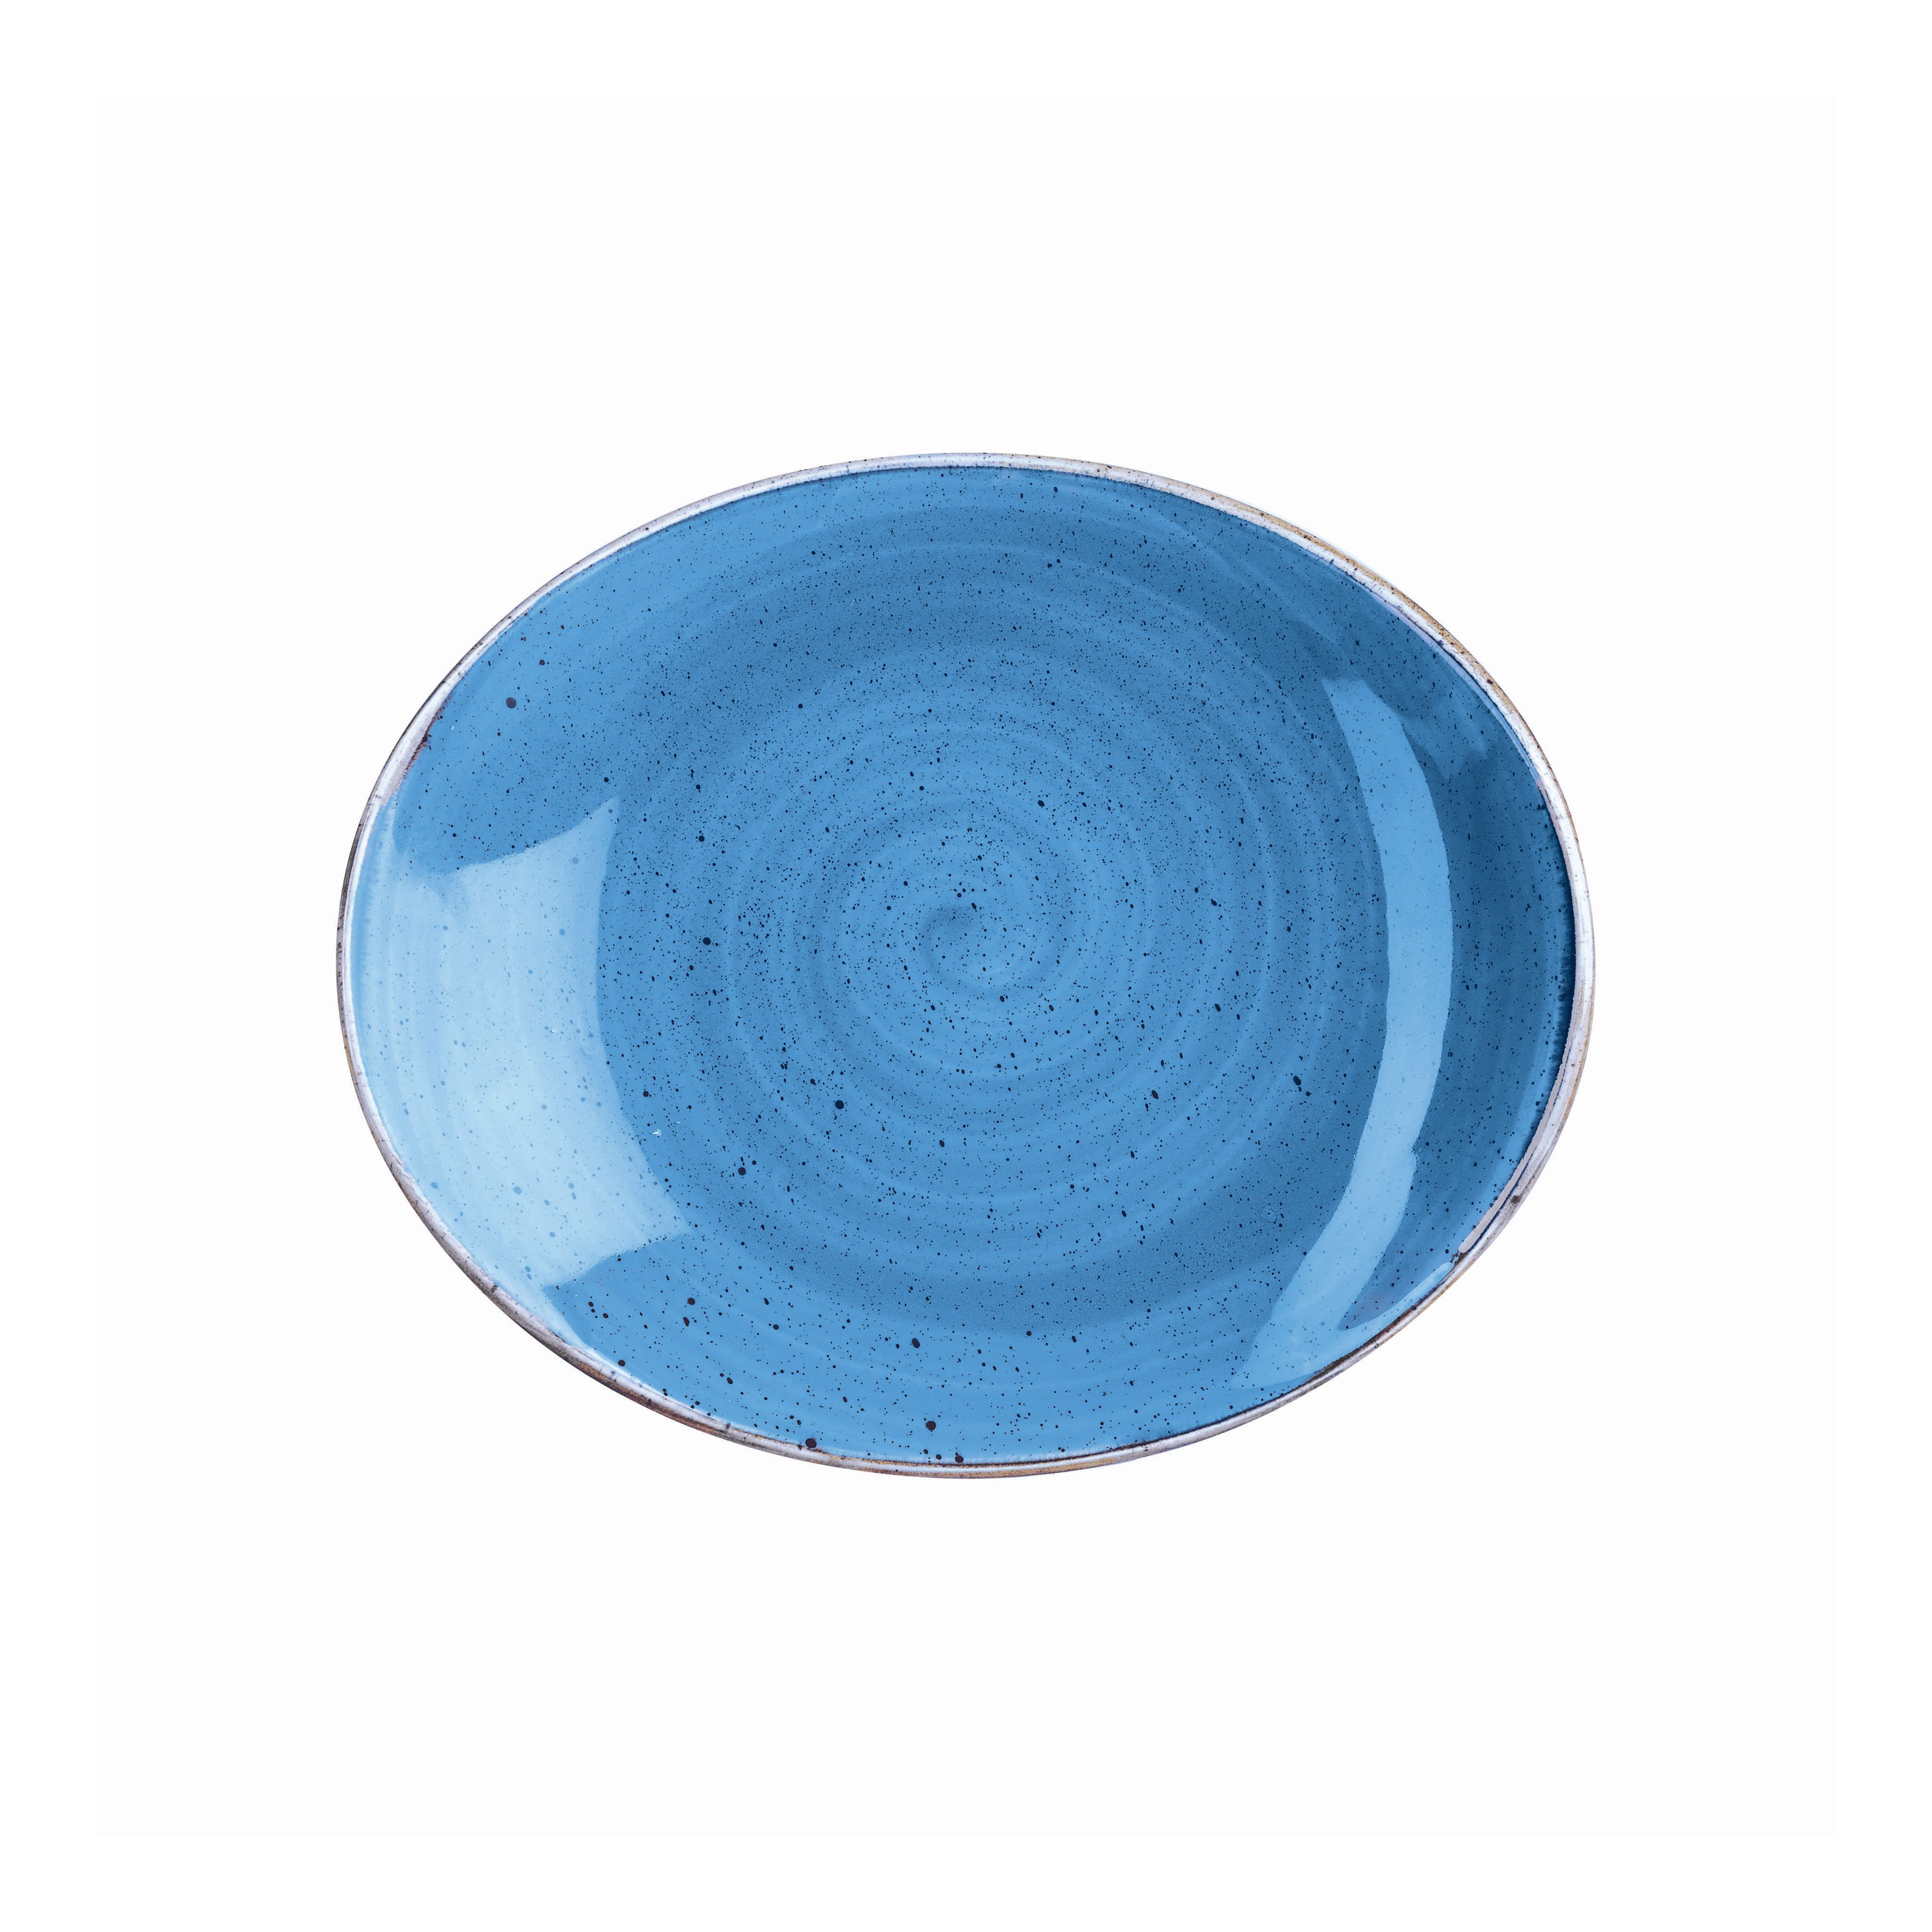 Platte oval coup 19cm STONECAST cornflower blue